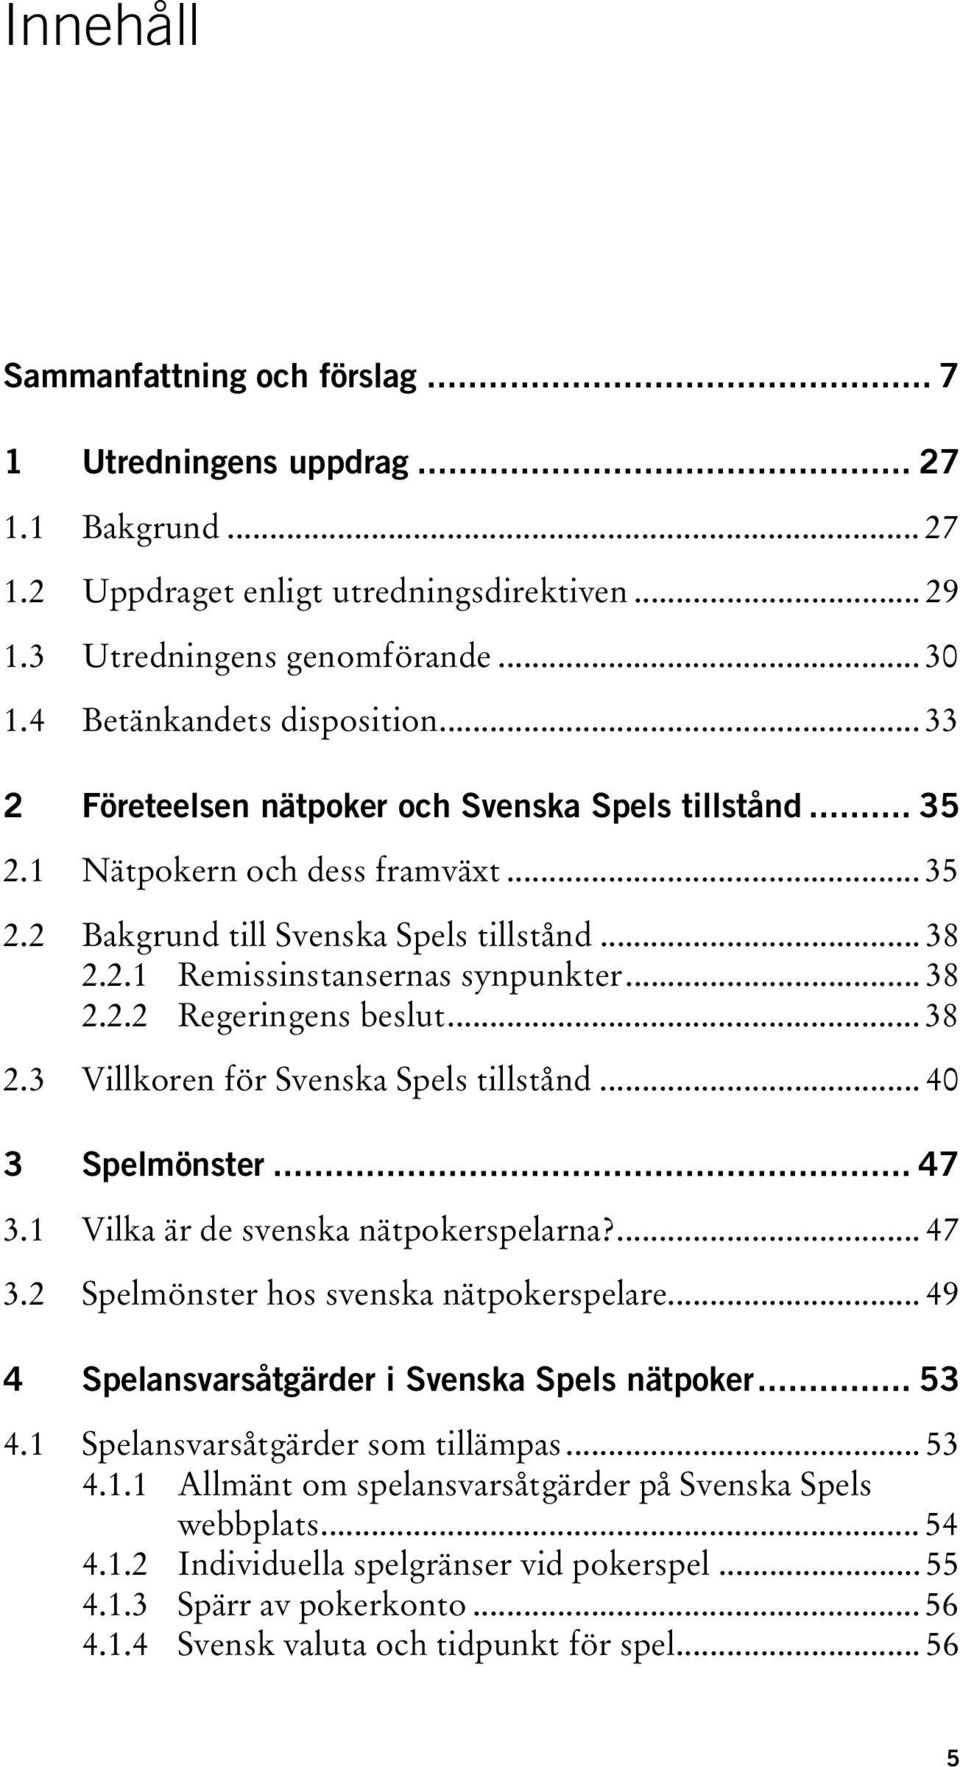 .. 38 2.2.2 Regeringens beslut... 38 2.3 Villkoren för Svenska Spels tillstånd... 40 3 Spelmönster... 47 3.1 Vilka är de svenska nätpokerspelarna?... 47 3.2 Spelmönster hos svenska nätpokerspelare.